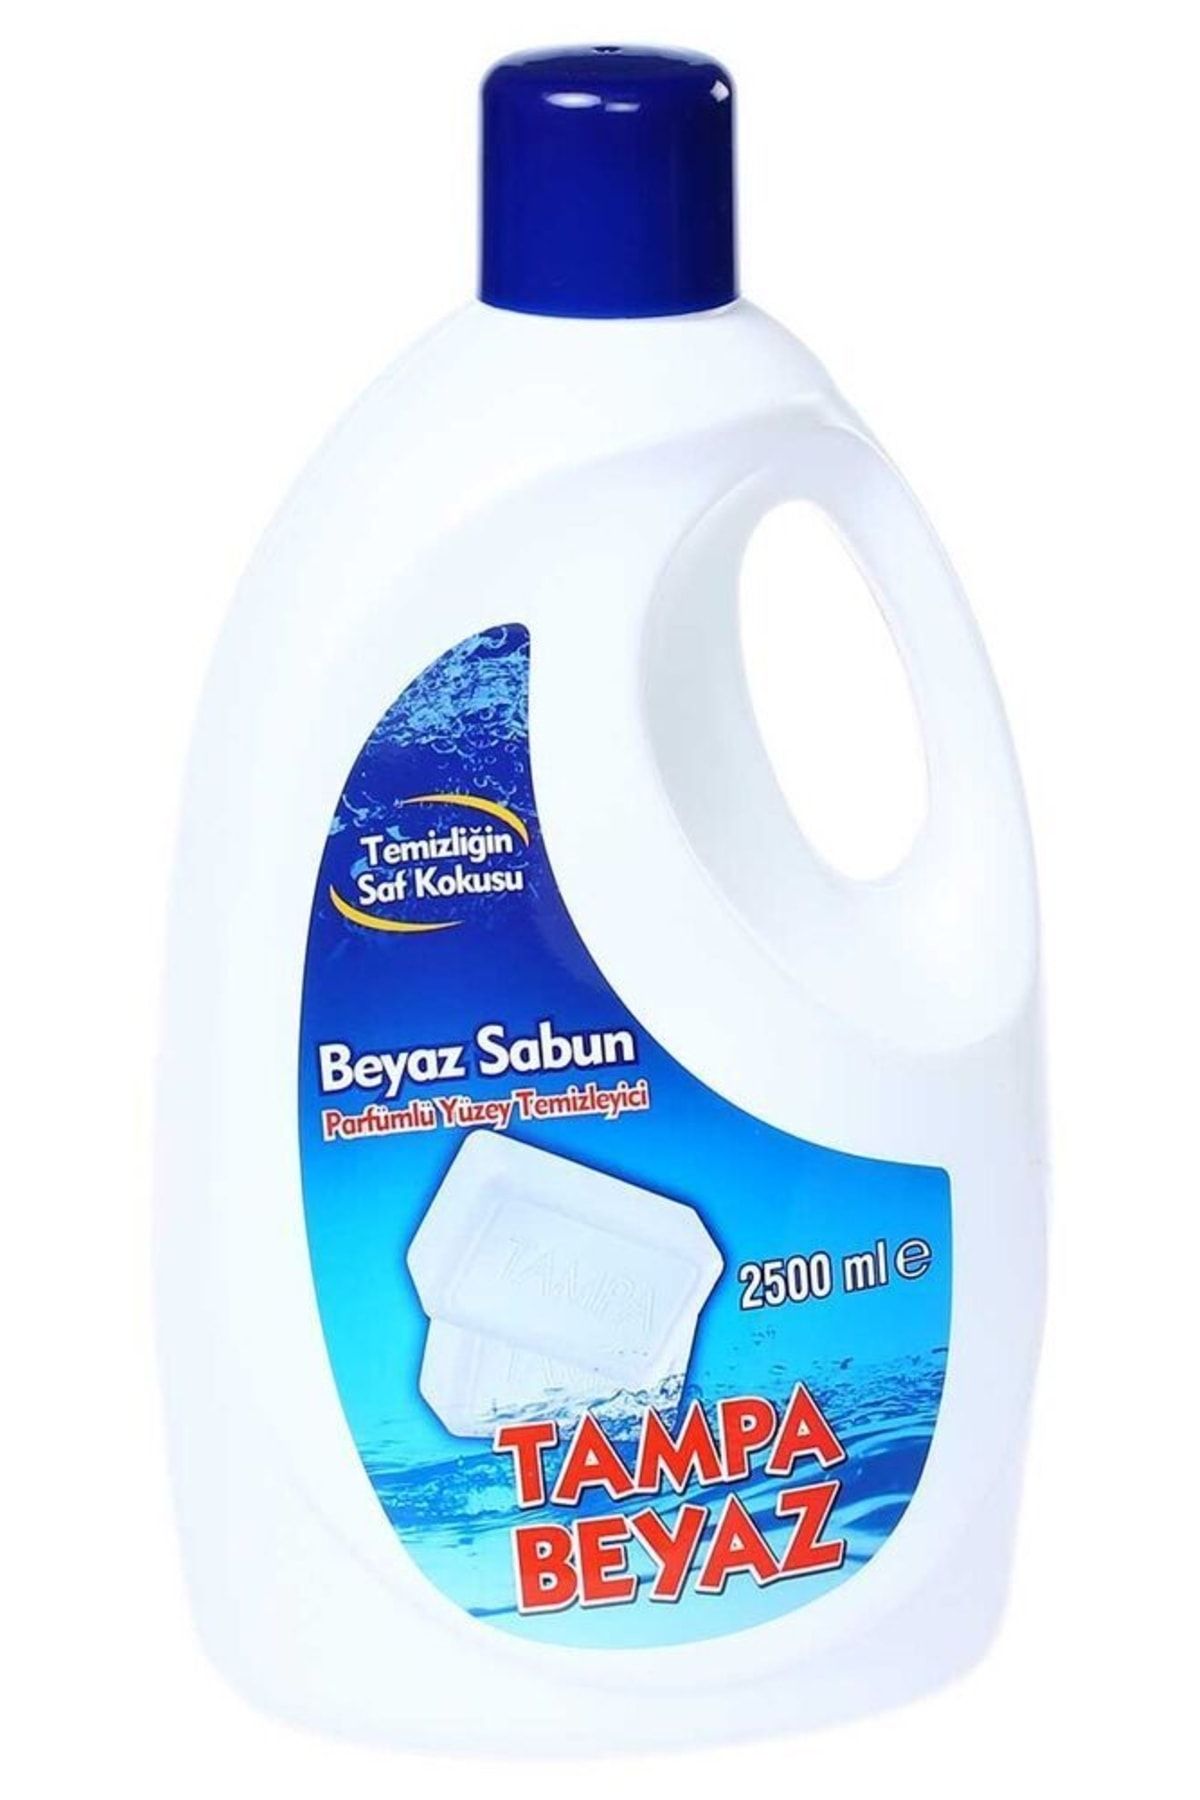 TAMPA Yüzey Temizleyici Beyaz Sabun Parfümlü 2,5 Lt